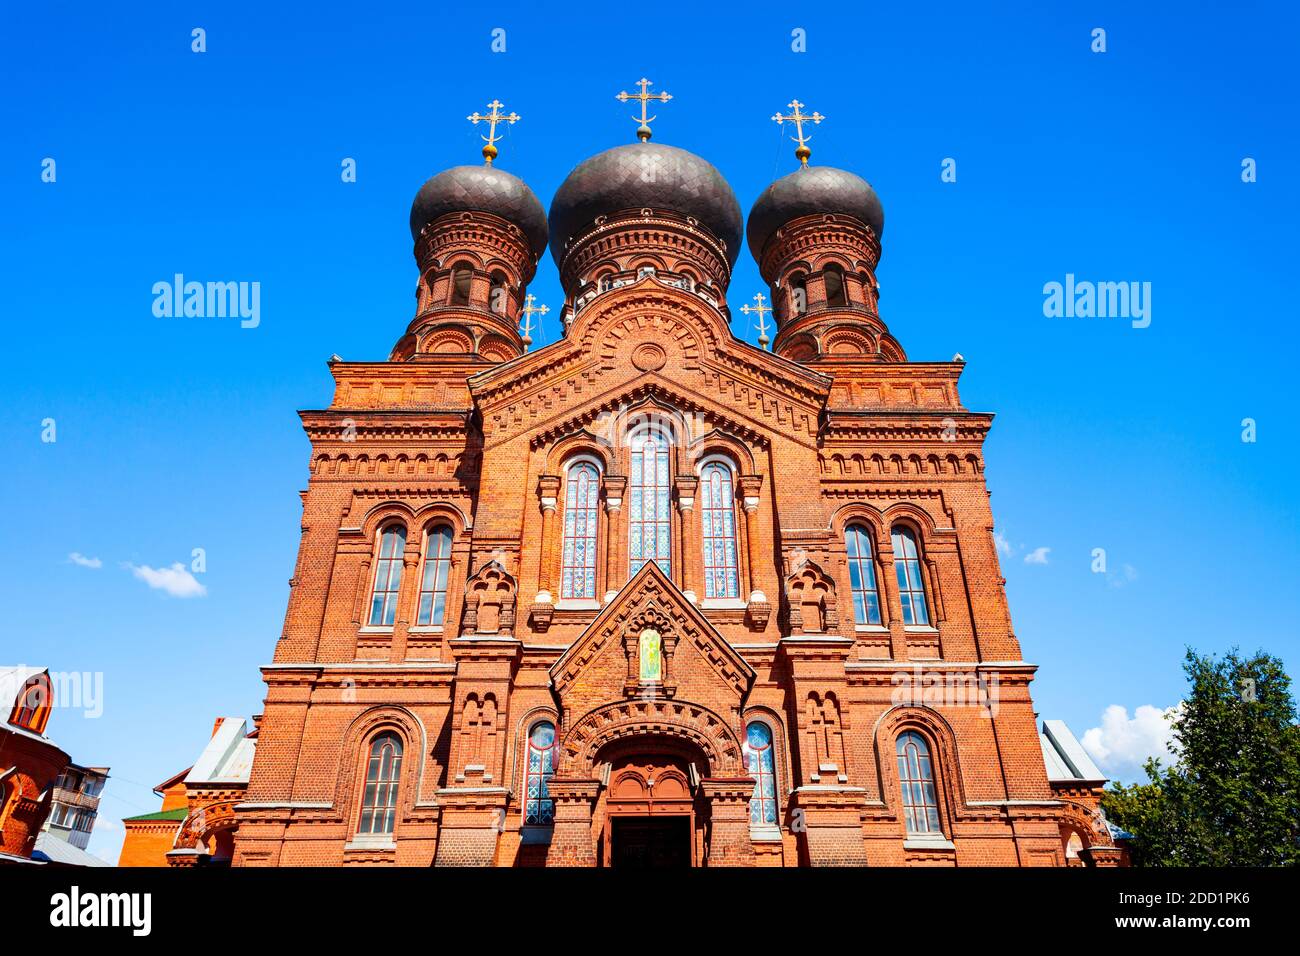 Swjato Wwedenski Frauenkloster der Russischen Orthodoxen Kirche im Zentrum der Stadt Iwanowo, Goldener Ring Russlands Stockfoto